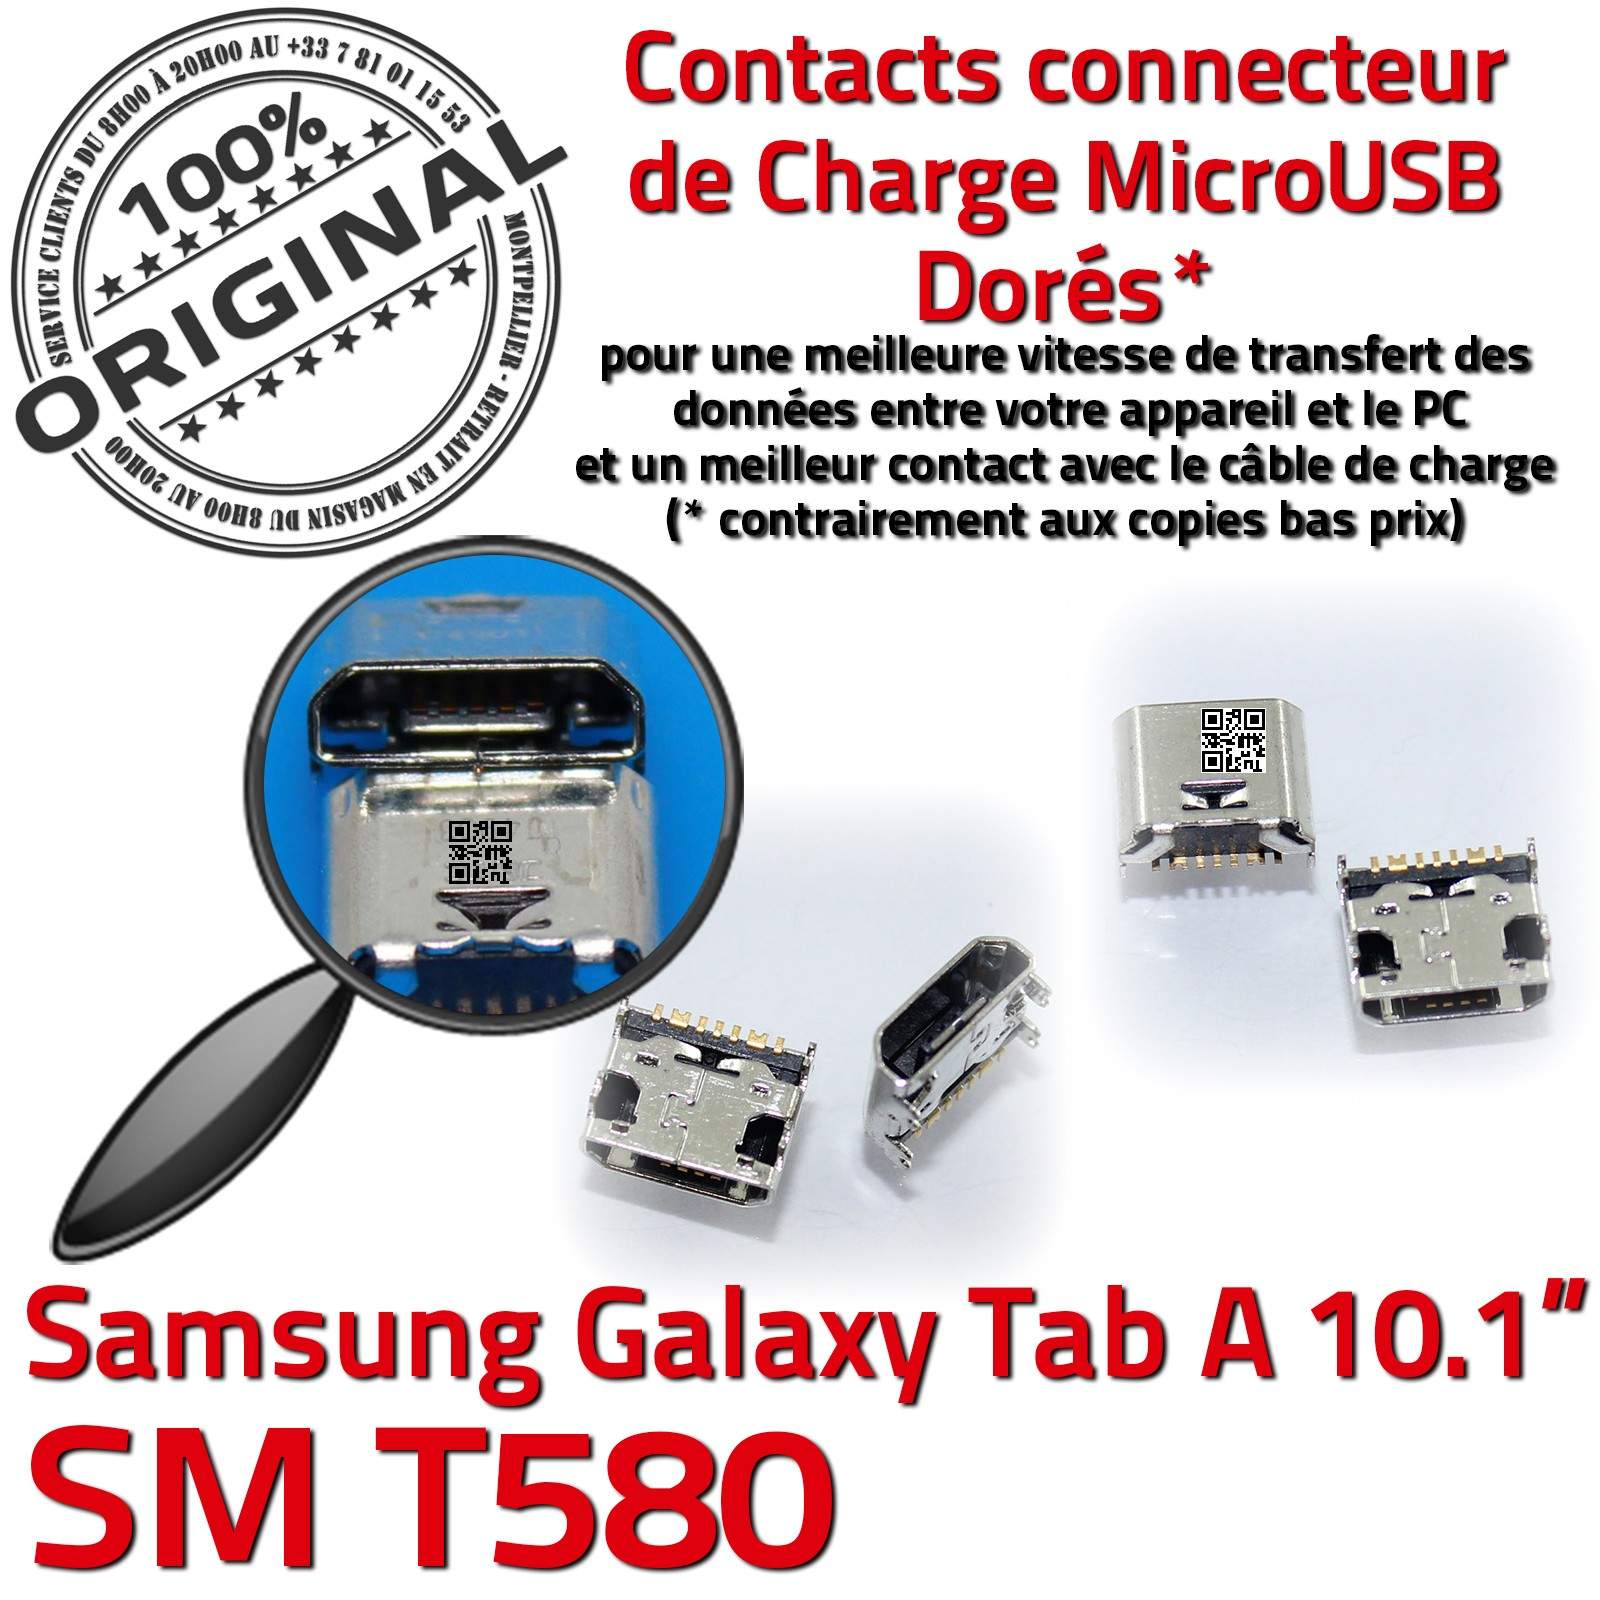 ORIGINAL Samsung Galaxy TAB A SM T580 Connecteur de charge à souder Micro USB Pins Dorés Dock Prise Connector Chargeur 10.1 inch